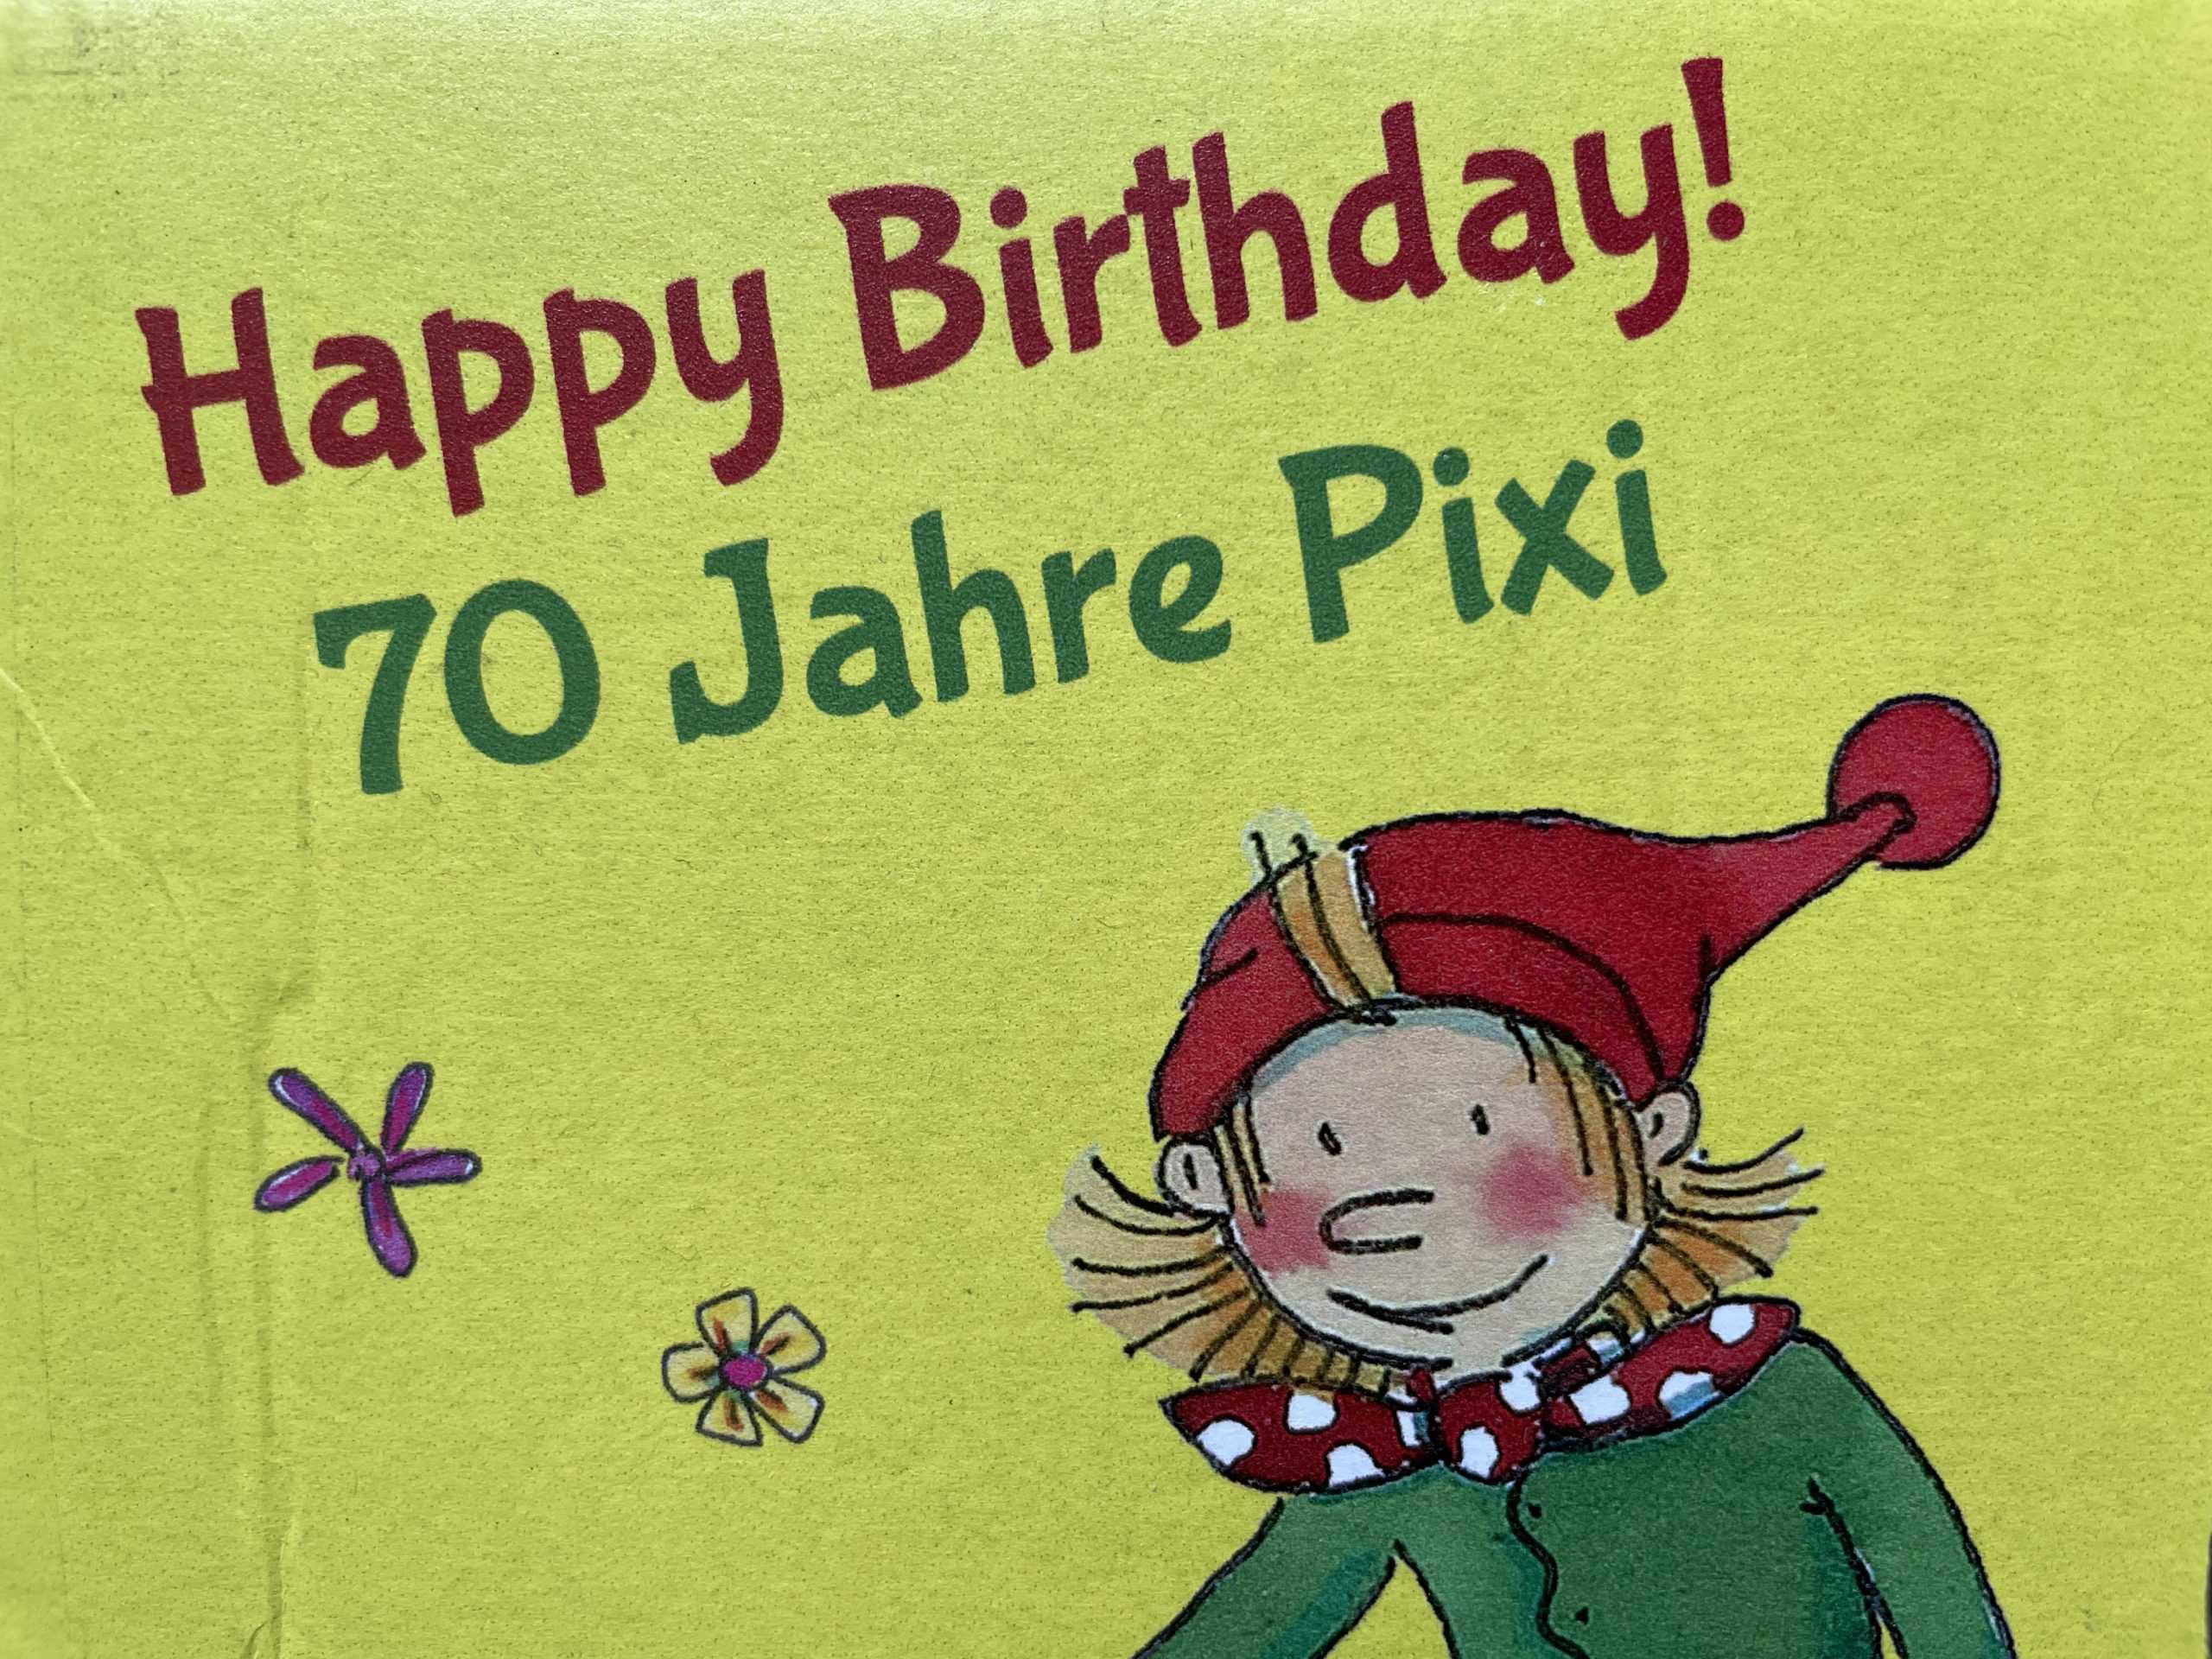 70 Jahre Pixi-Bücher